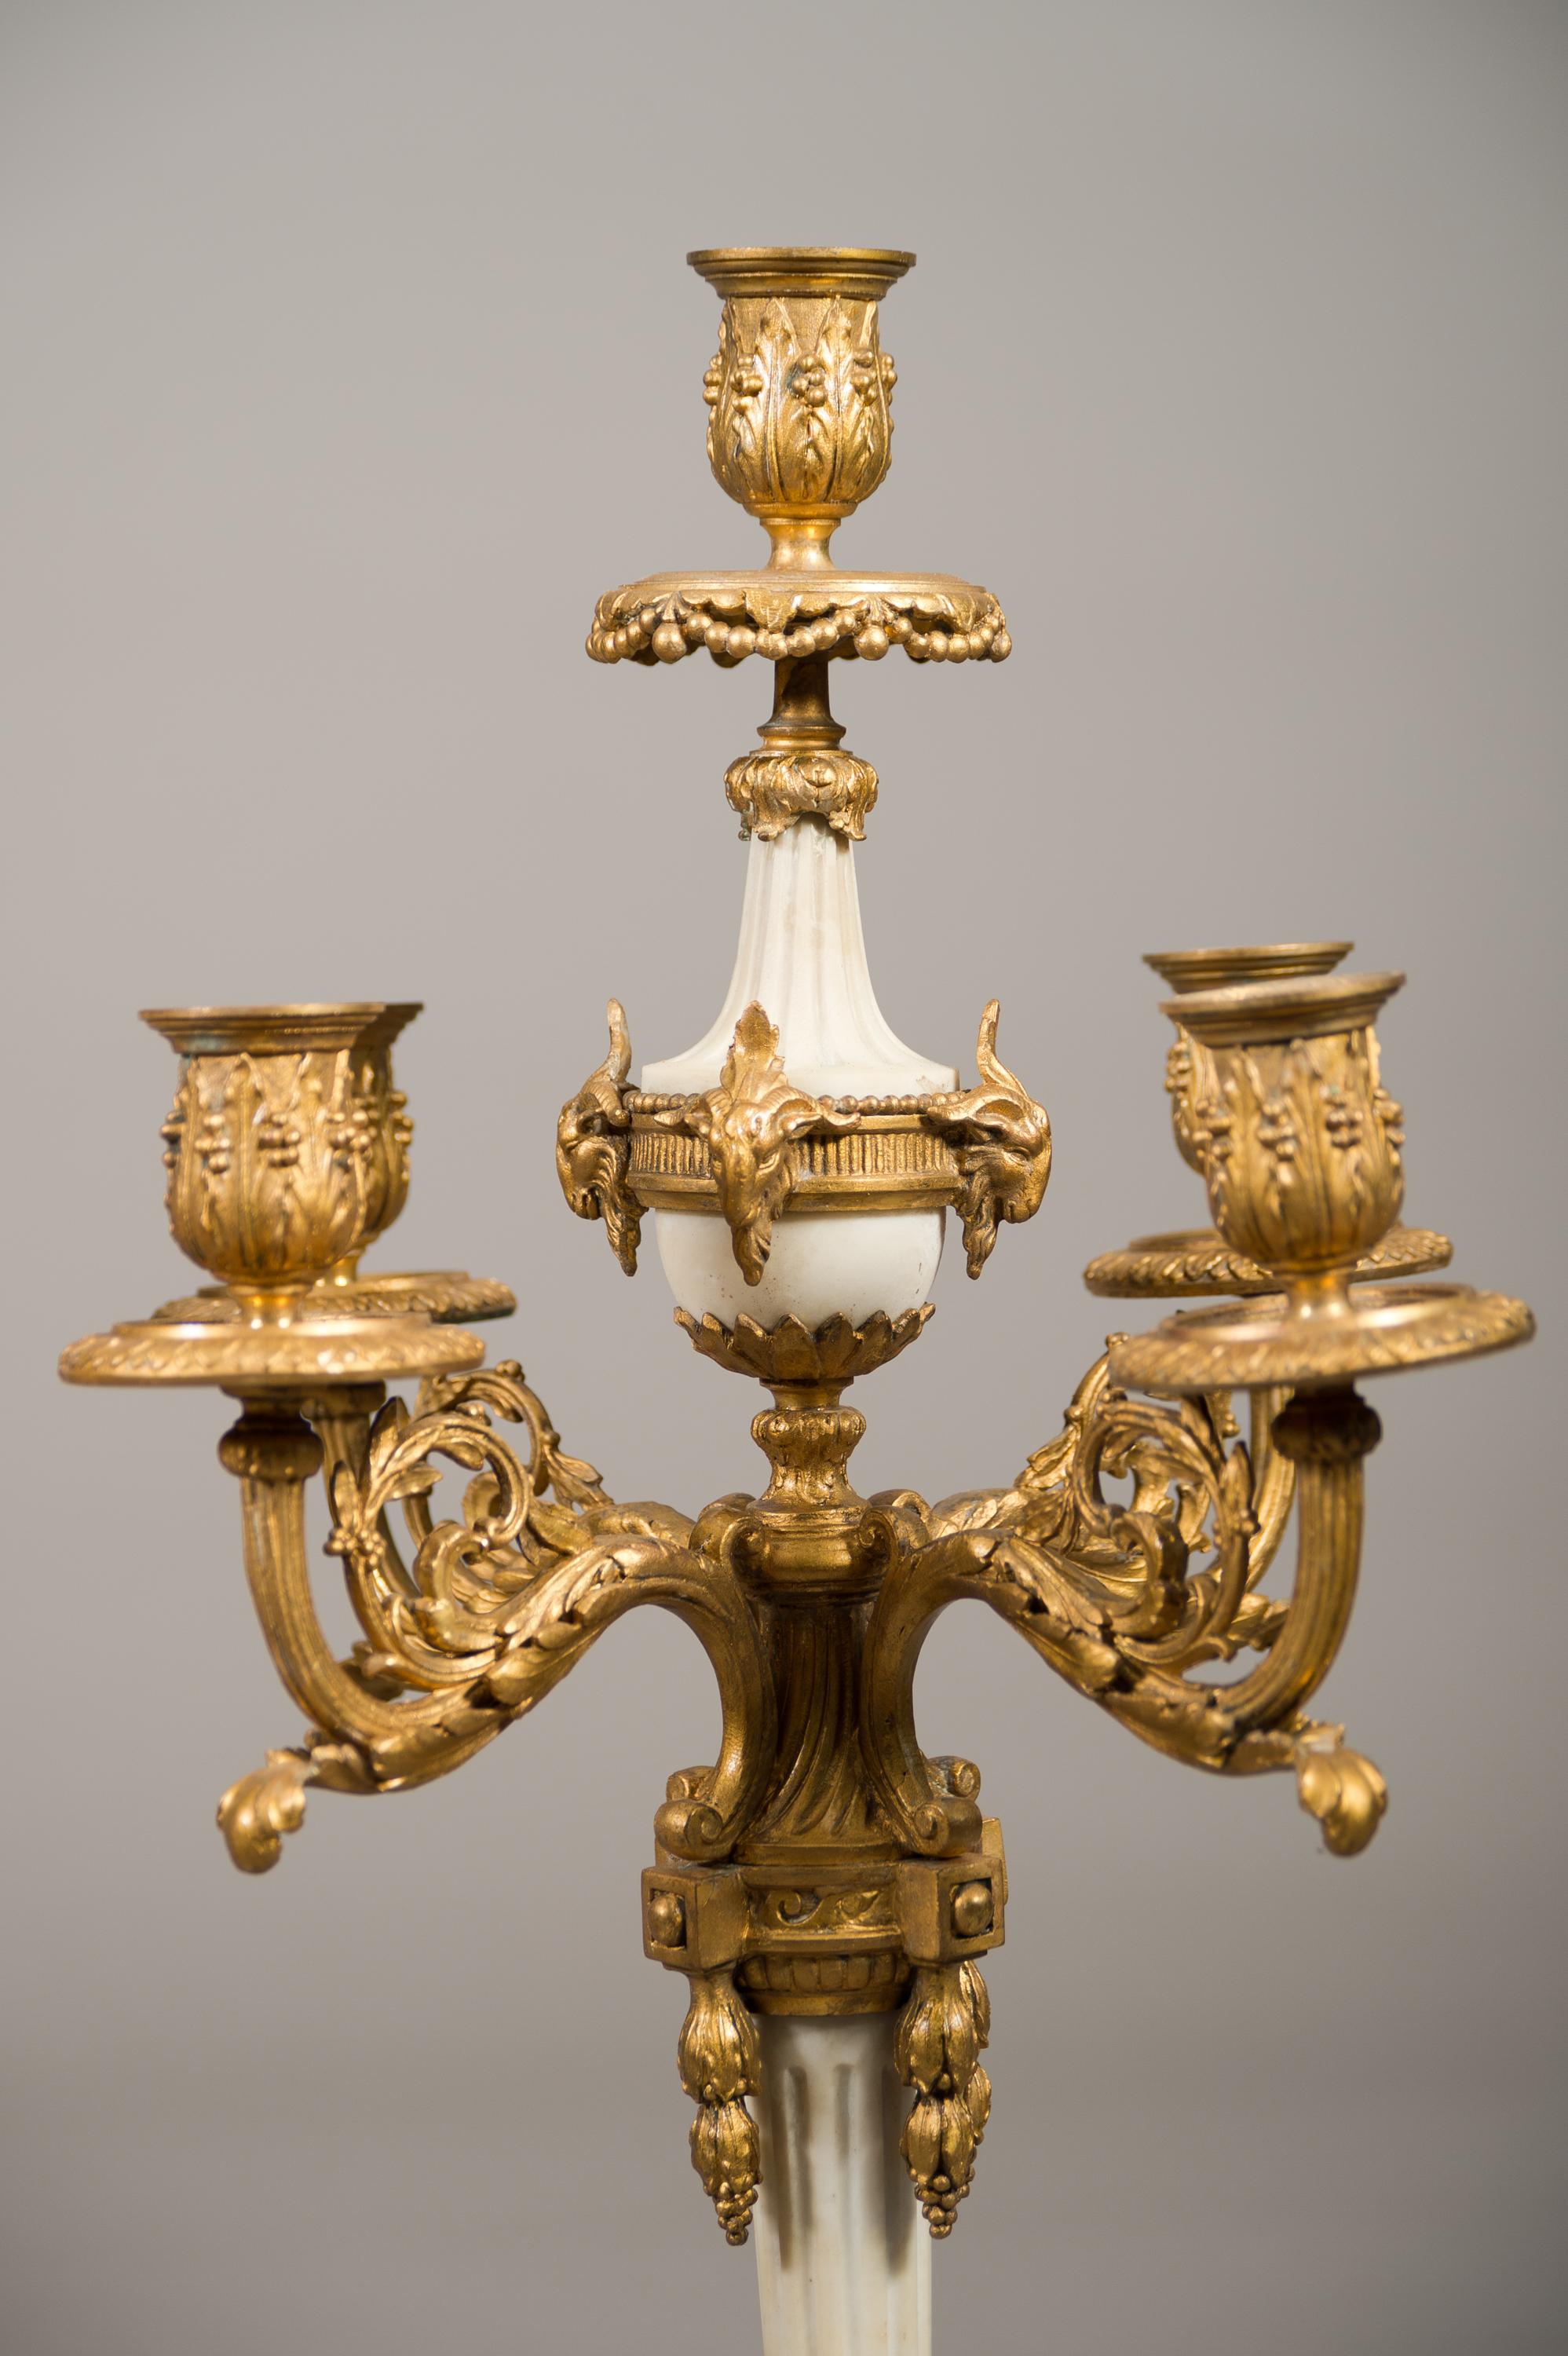 Pendule lyre en bronze doré et marbre blanc du XIXe siècle.
Le boîtier est monté avec des guirlandes florales, avec une figure de Cupidon au sommet et deux chérubins sur les côtés, sur une base rectangulaire cannelée sur des pieds toupies. Cadran